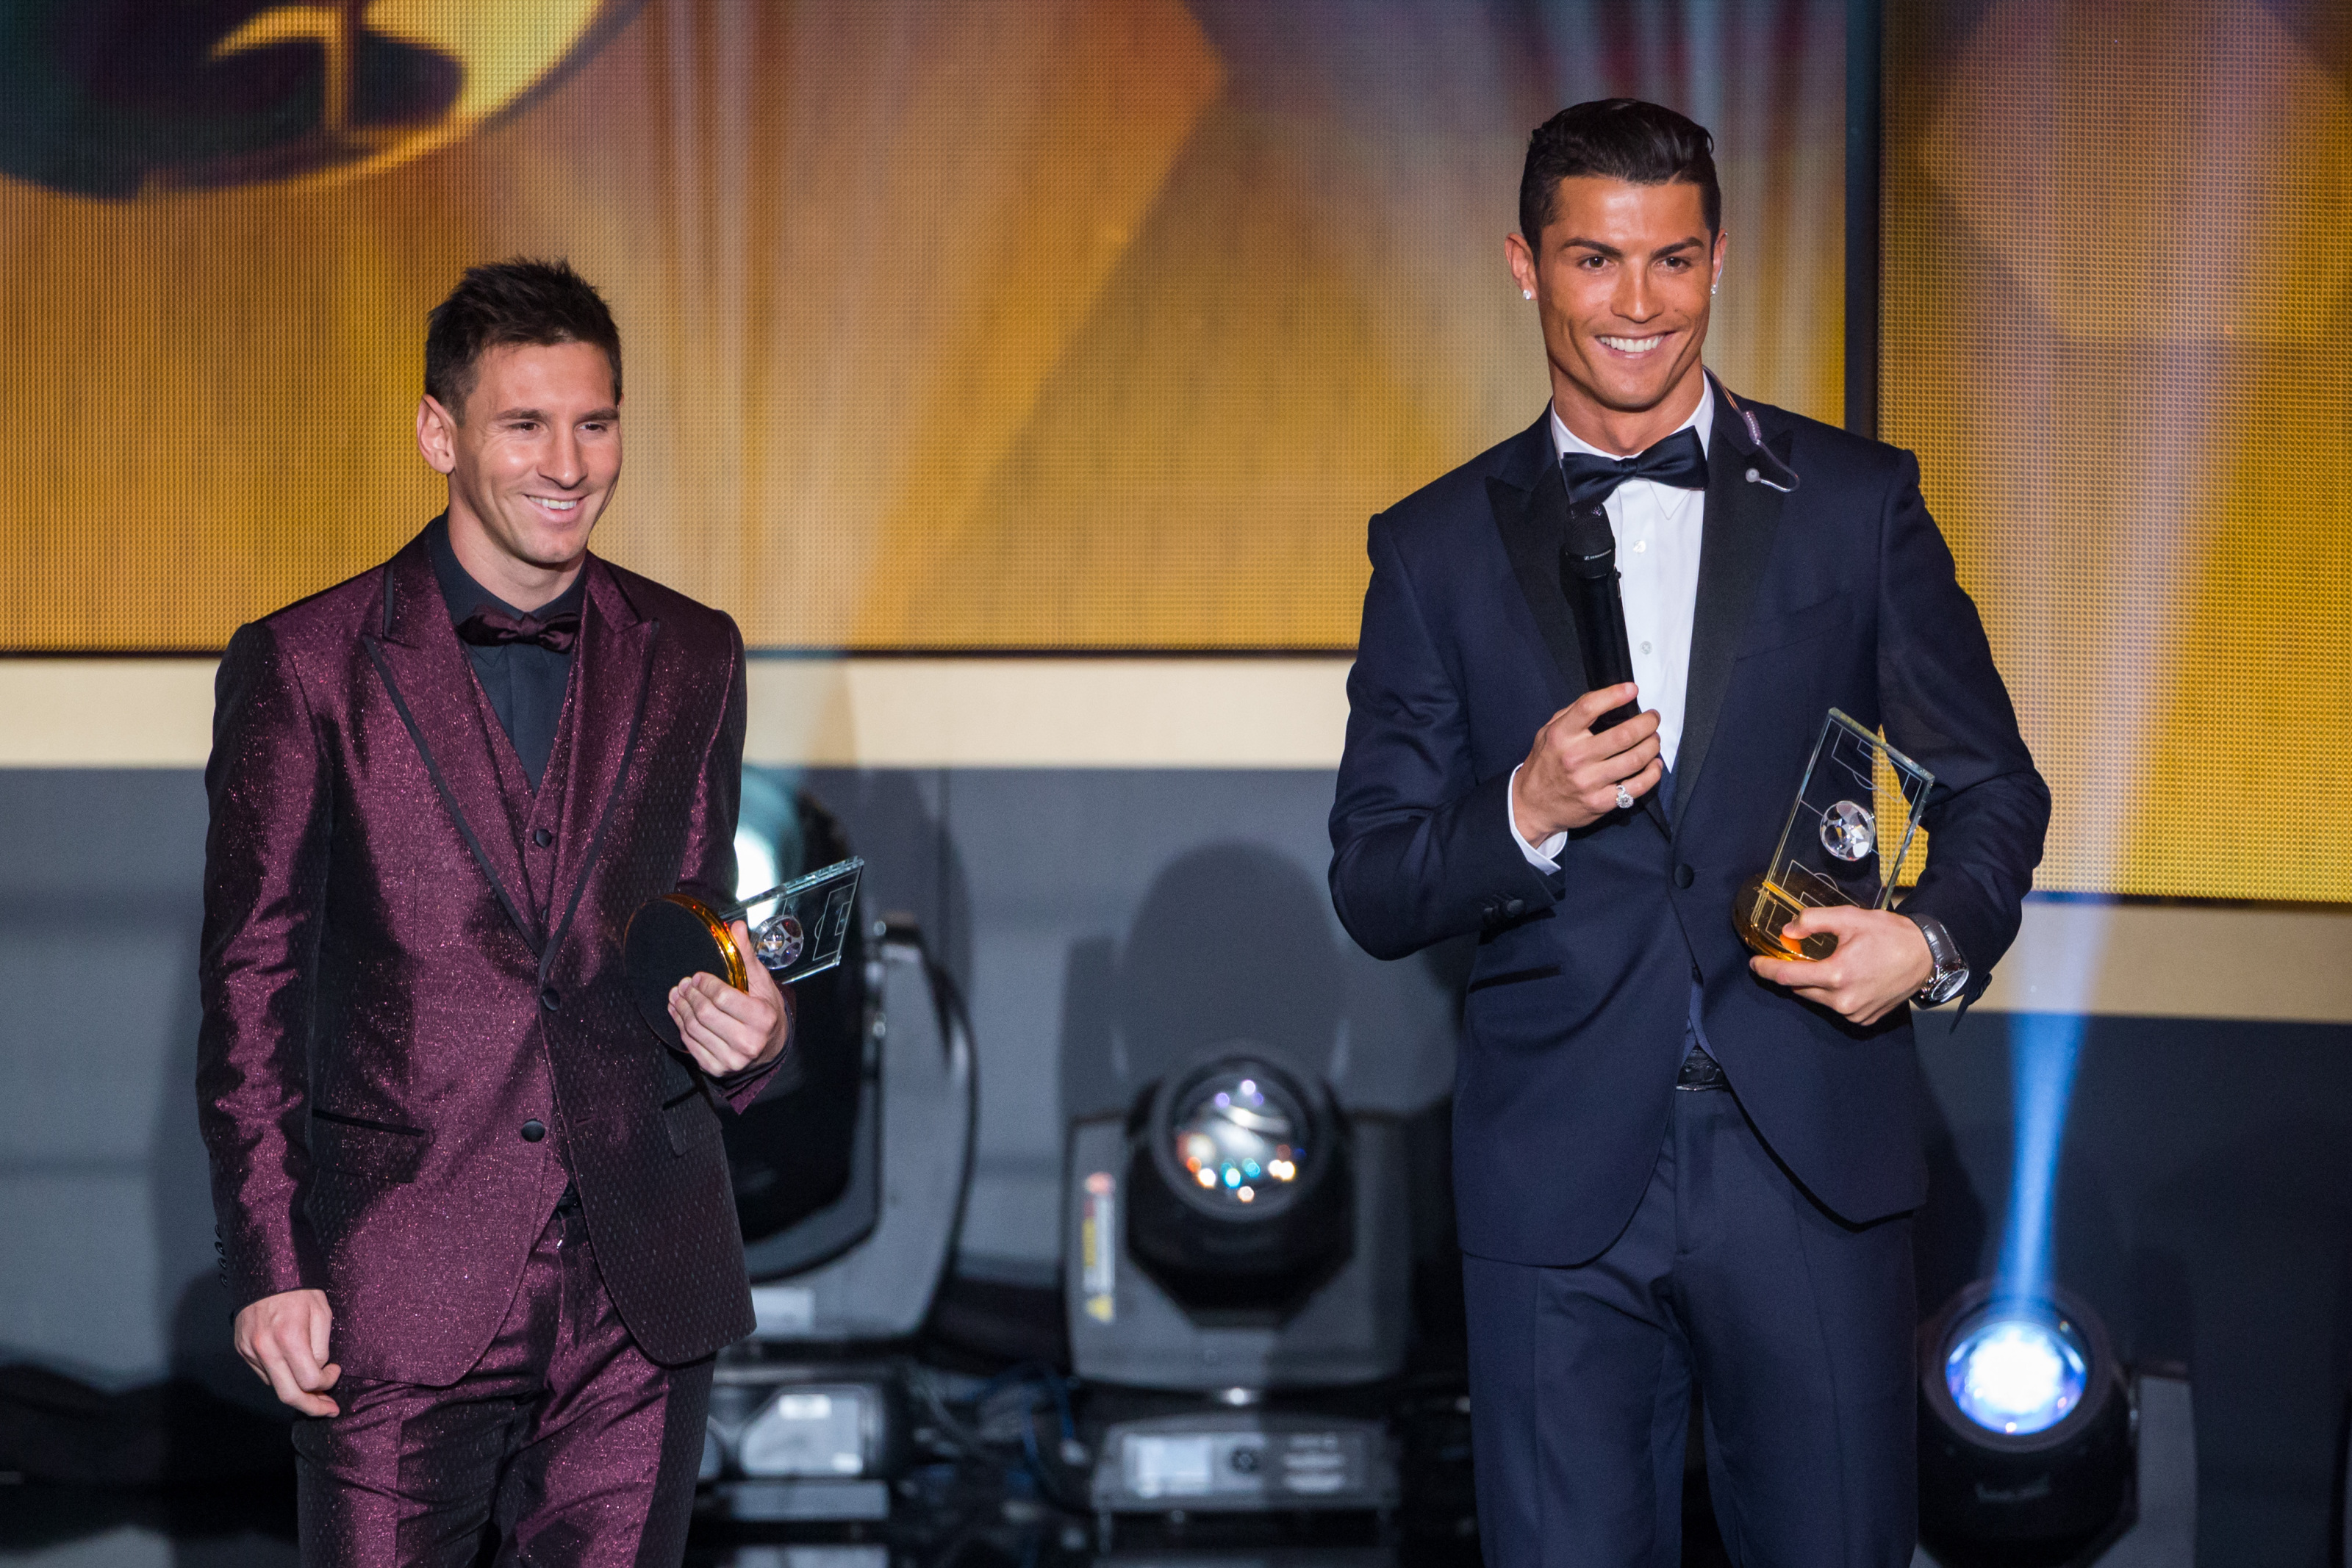 Ronaldo x Messi for LV 😍👀 #louisvuitton #messi #ronaldo